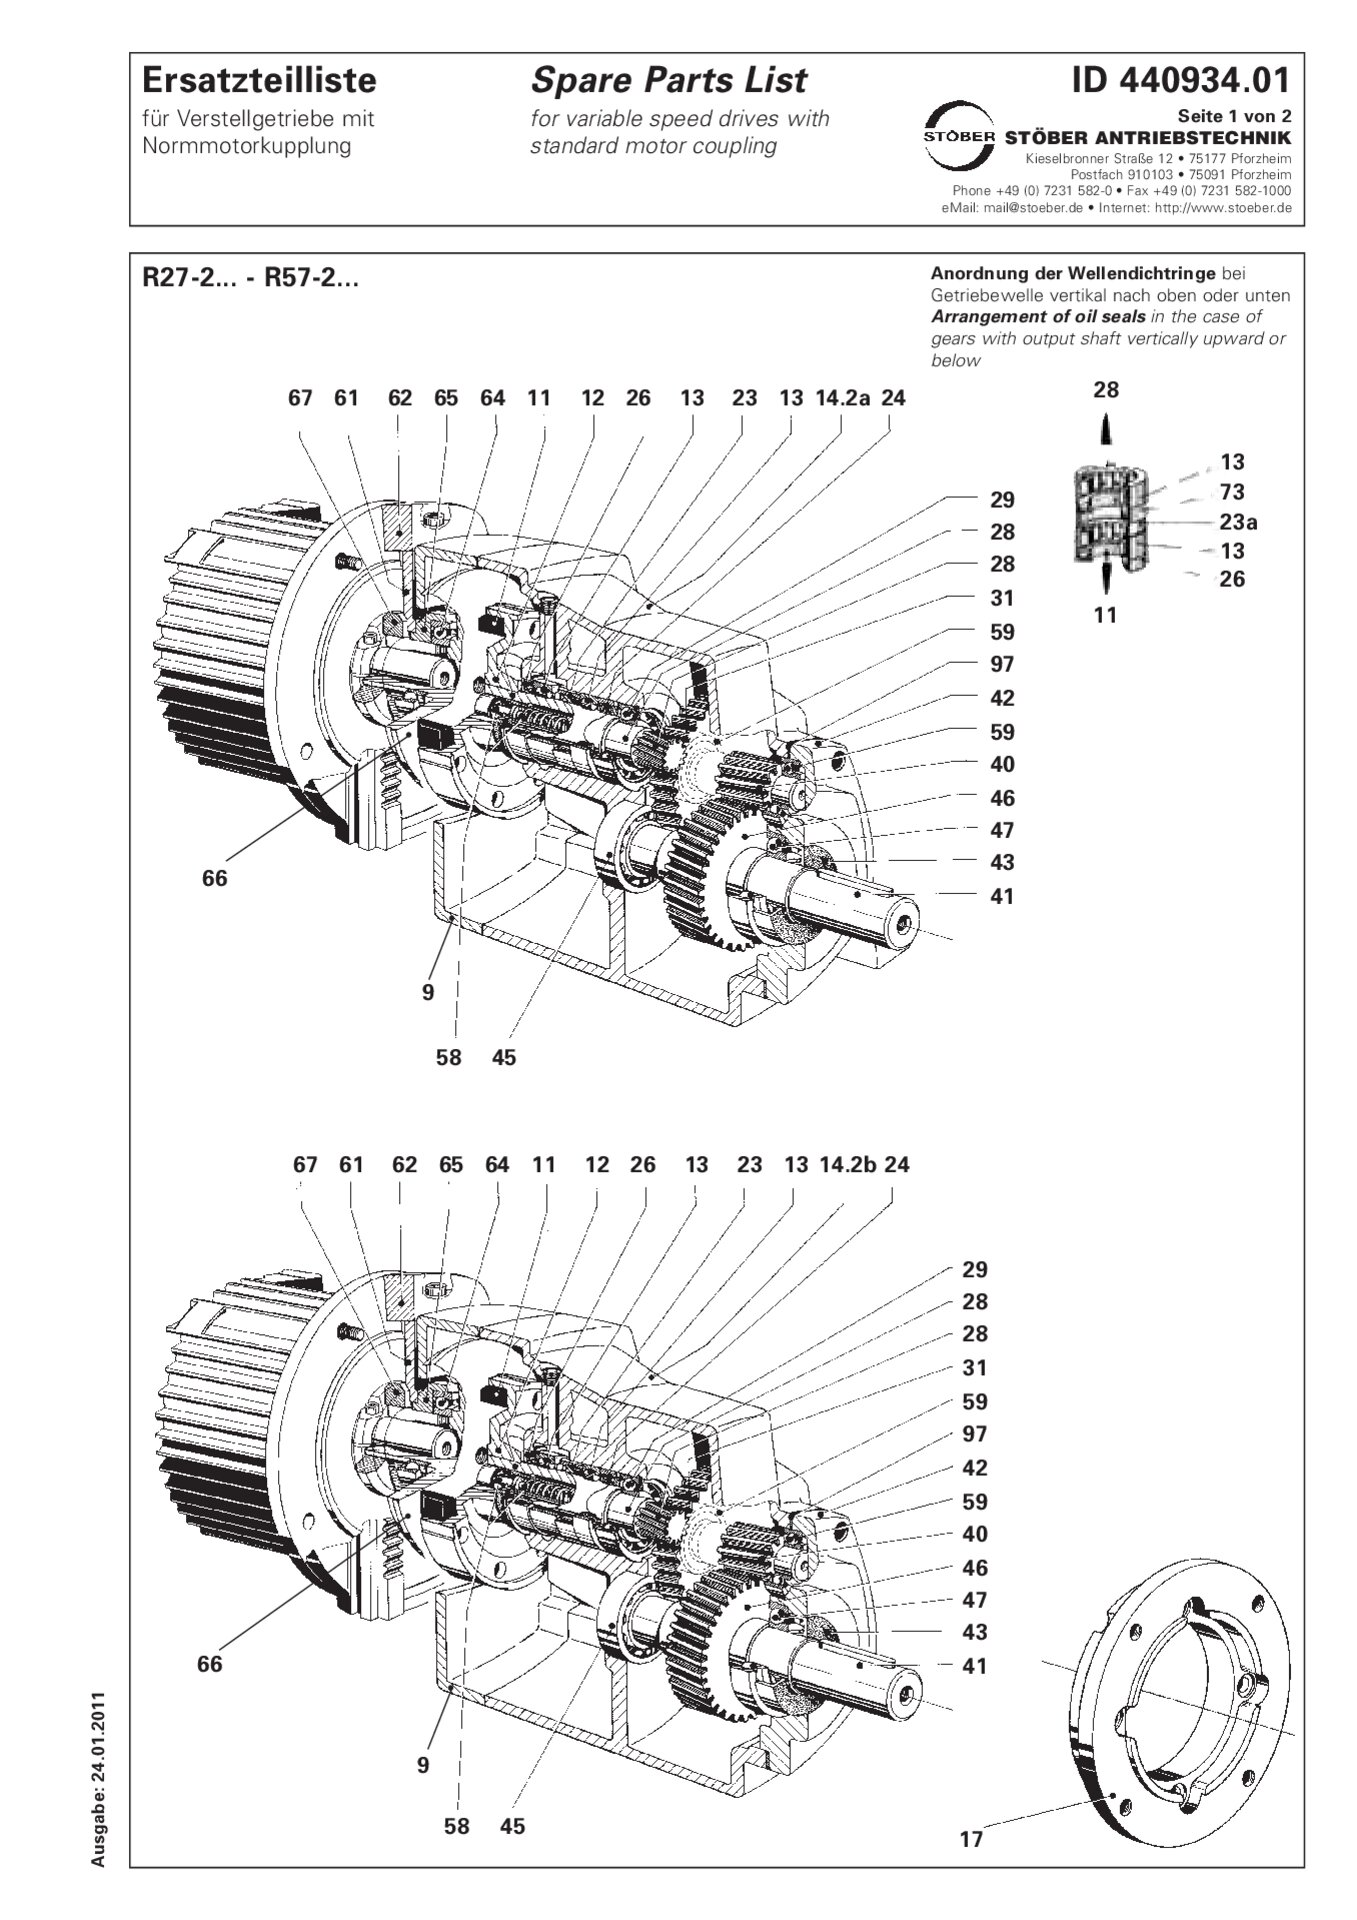 Liste des pièces de rechange R27-2/R37-2/R47-2/R57-2 avec accouplement de moteur standard